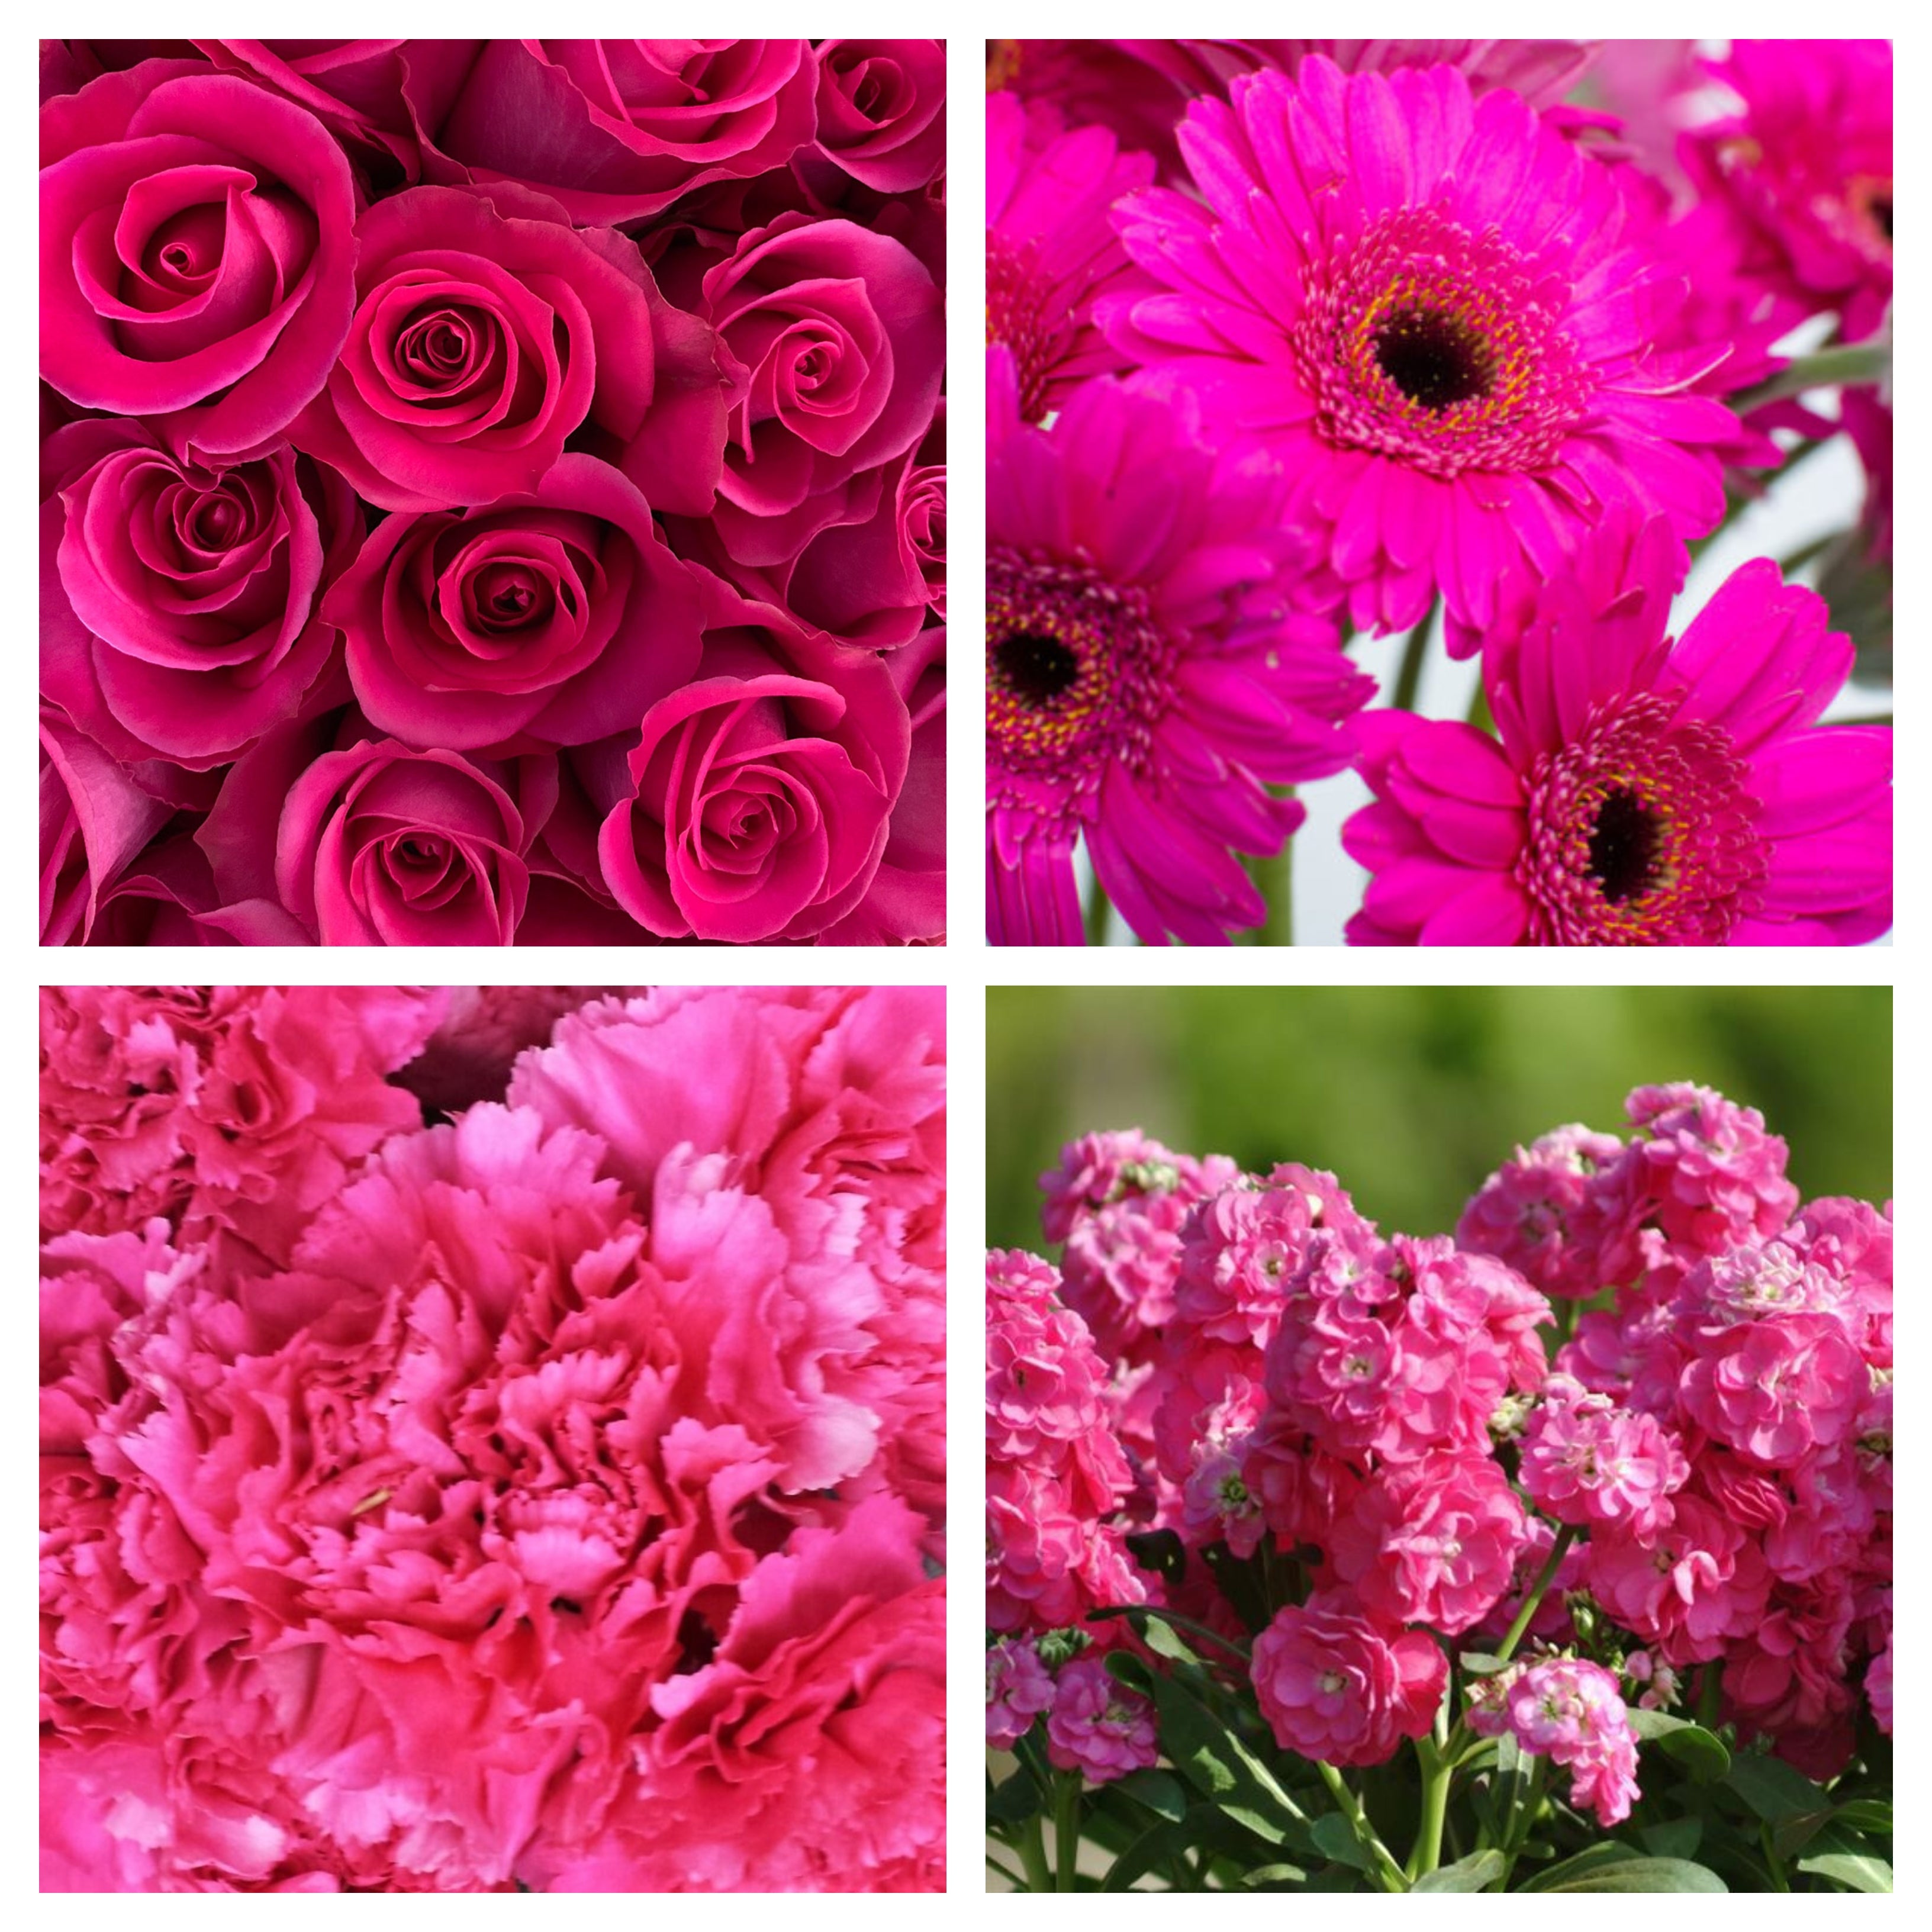 Natural Raffia Bundles, Floral Accent Bundle, Wedding bouquets accents  wholesale - Wholesale Flowers and Supplies